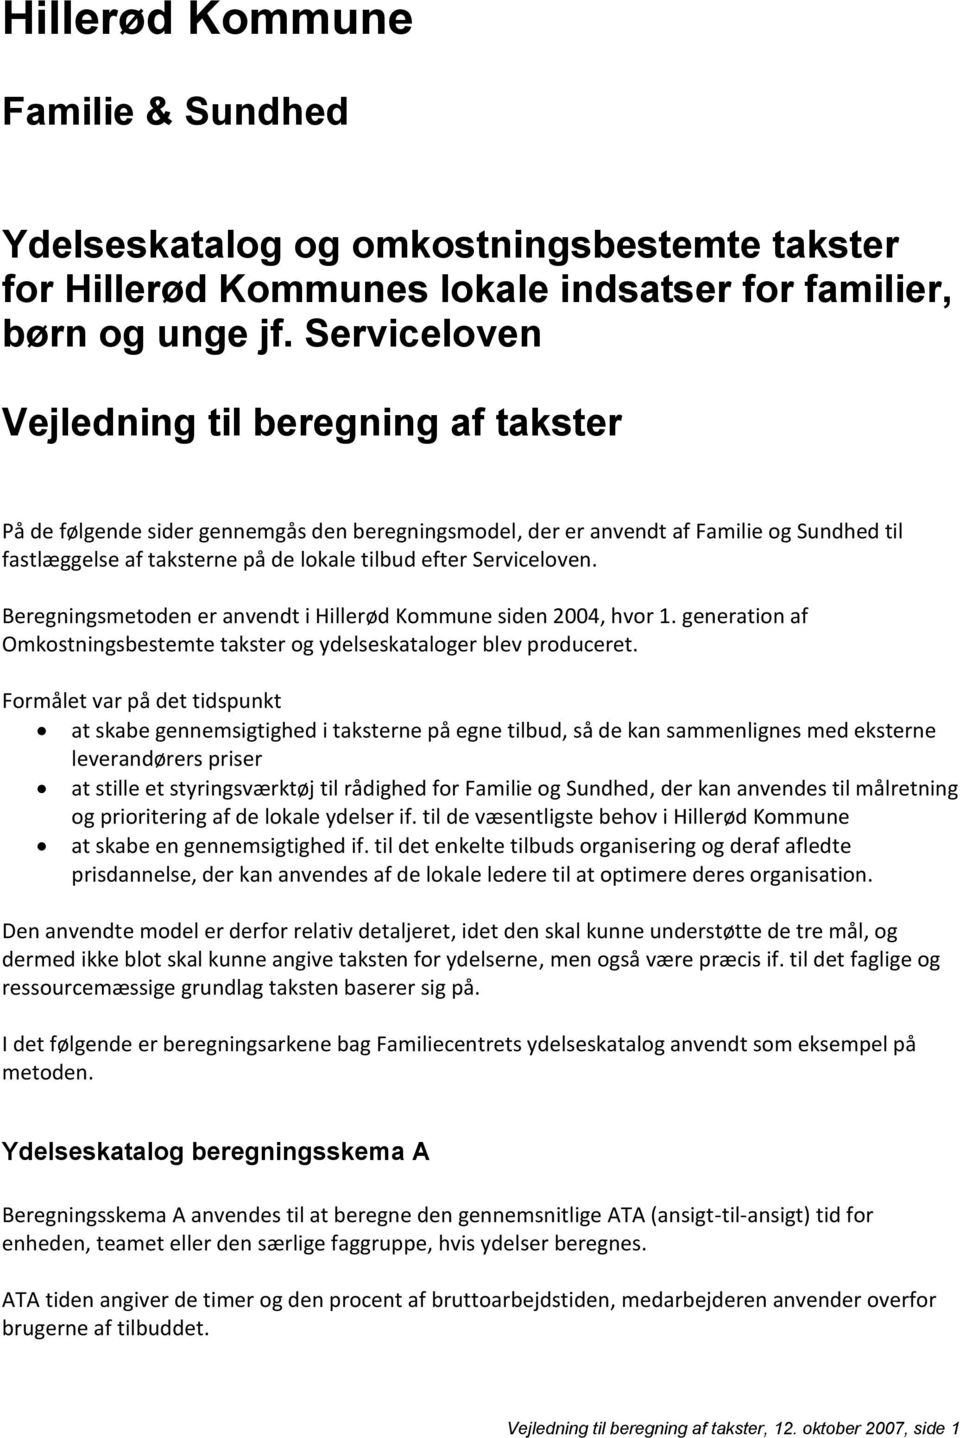 Serviceloven. Beregningsmetoden er anvendt i Hillerød Kommune siden 2004, hvor 1. generation af Omkostningsbestemte takster og ydelseskataloger blev produceret.